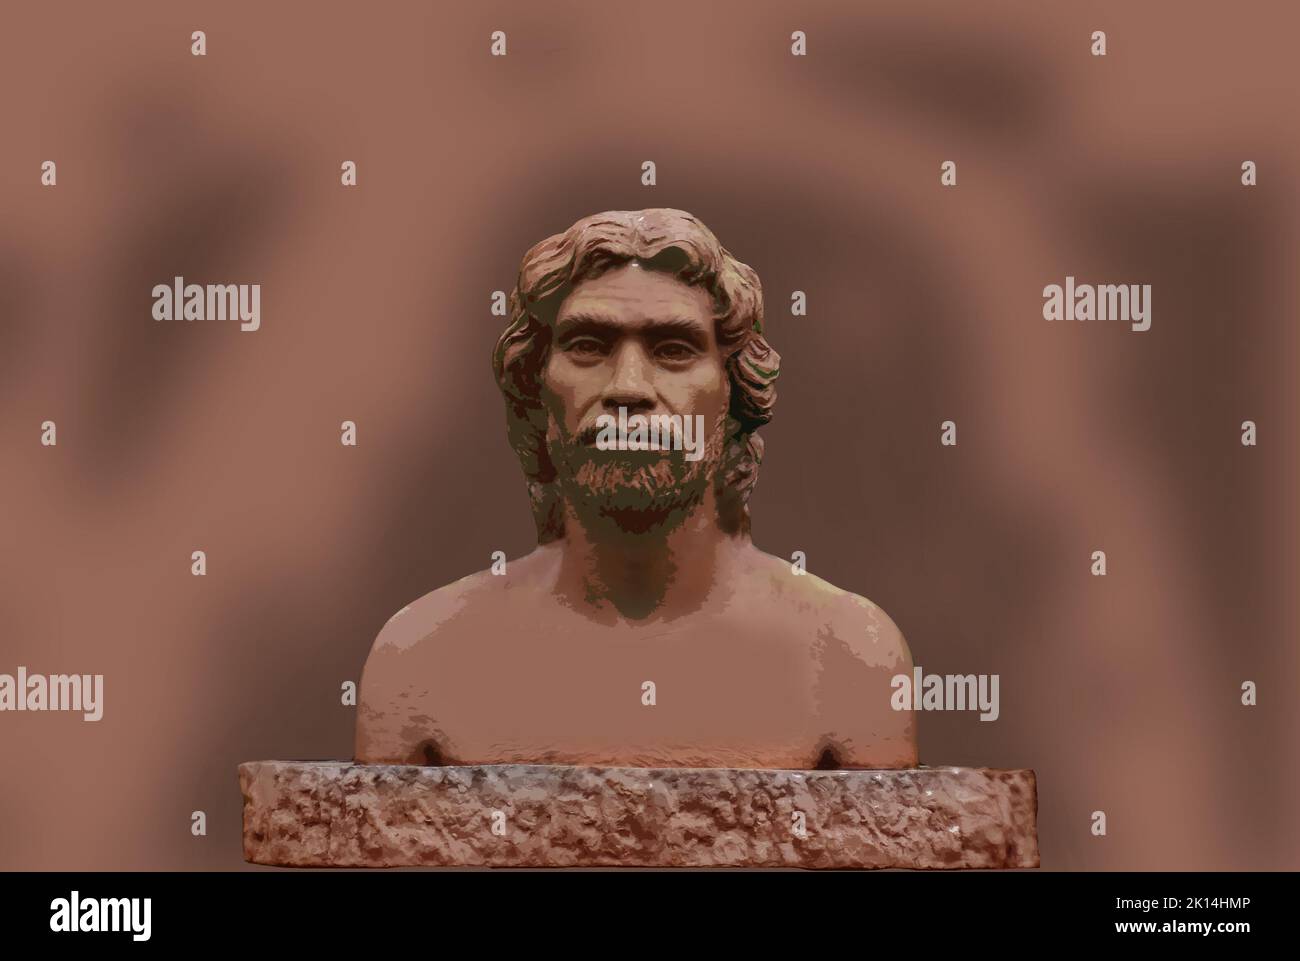 Computer Graphic Illustration di Homo sapiens o uomo moderno che sono le specie di primate più abbondanti e diffuse Foto Stock